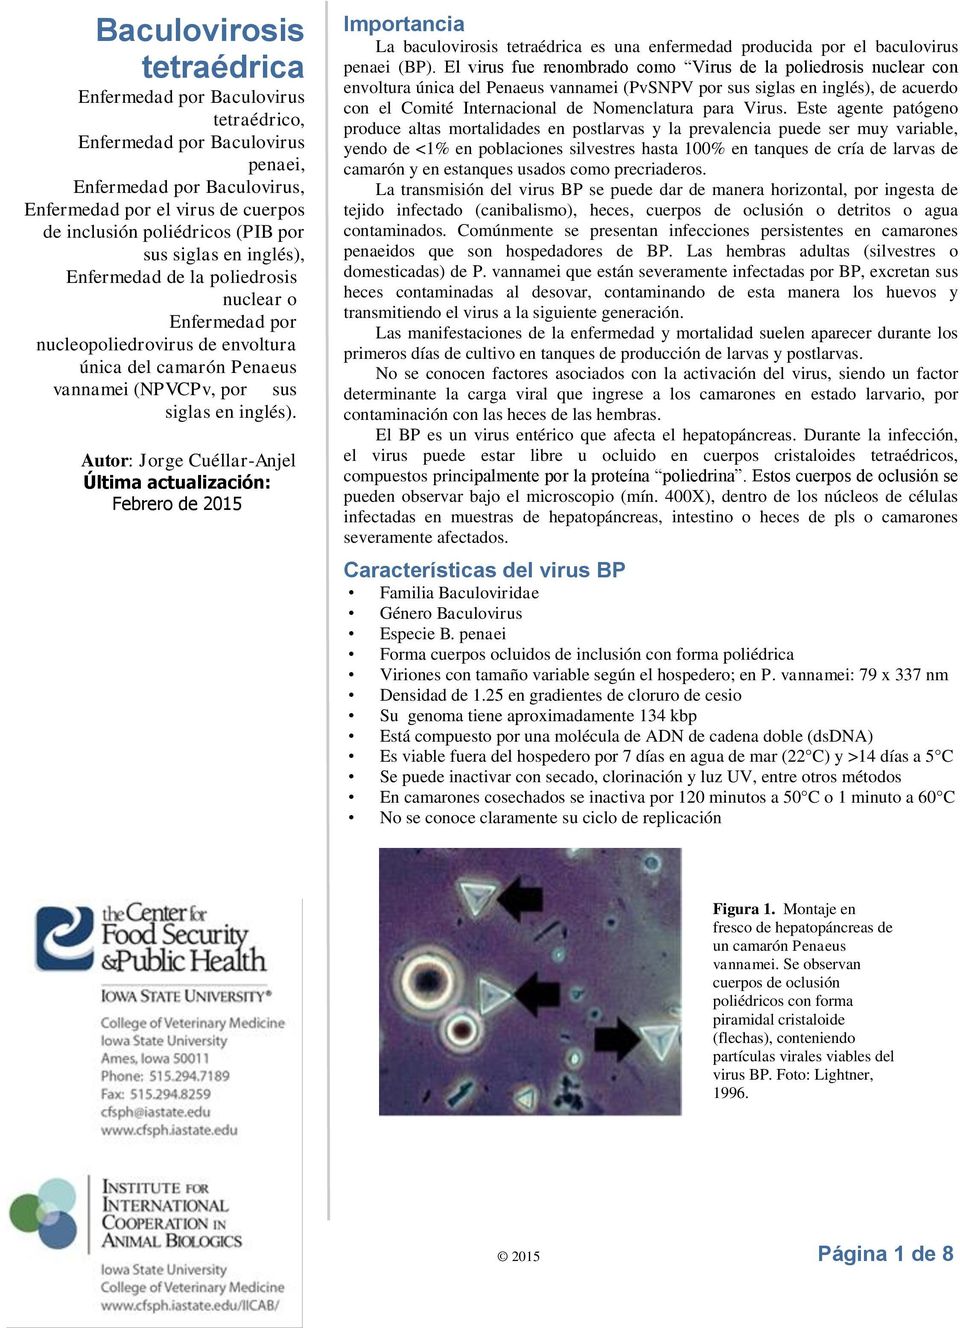 Autor: Jorge Cuéllar-Anjel Última actualización: Febrero de 2015 Importancia La baculovirosis tetraédrica es una enfermedad producida por el baculovirus penaei (BP).